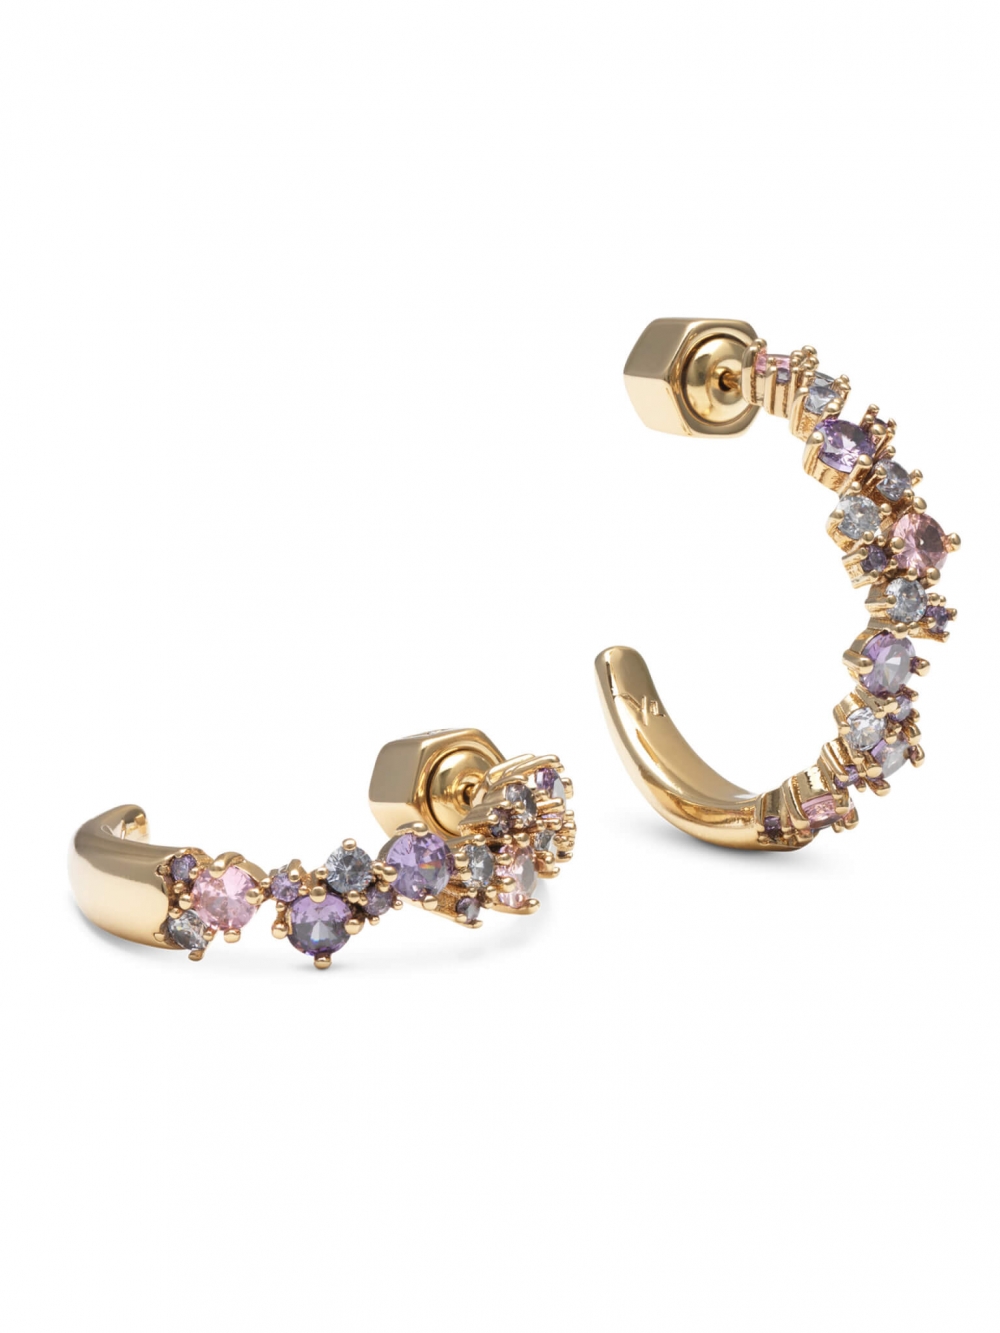 Et klassisk åpent hoop-design med en avantgarde-vri, dette elegante paret øredobber har en kombinasjon av rosarøde, ametyst- og klare cubic zirconia-krystaller som glitrer blant delikate gullbelagte perler.